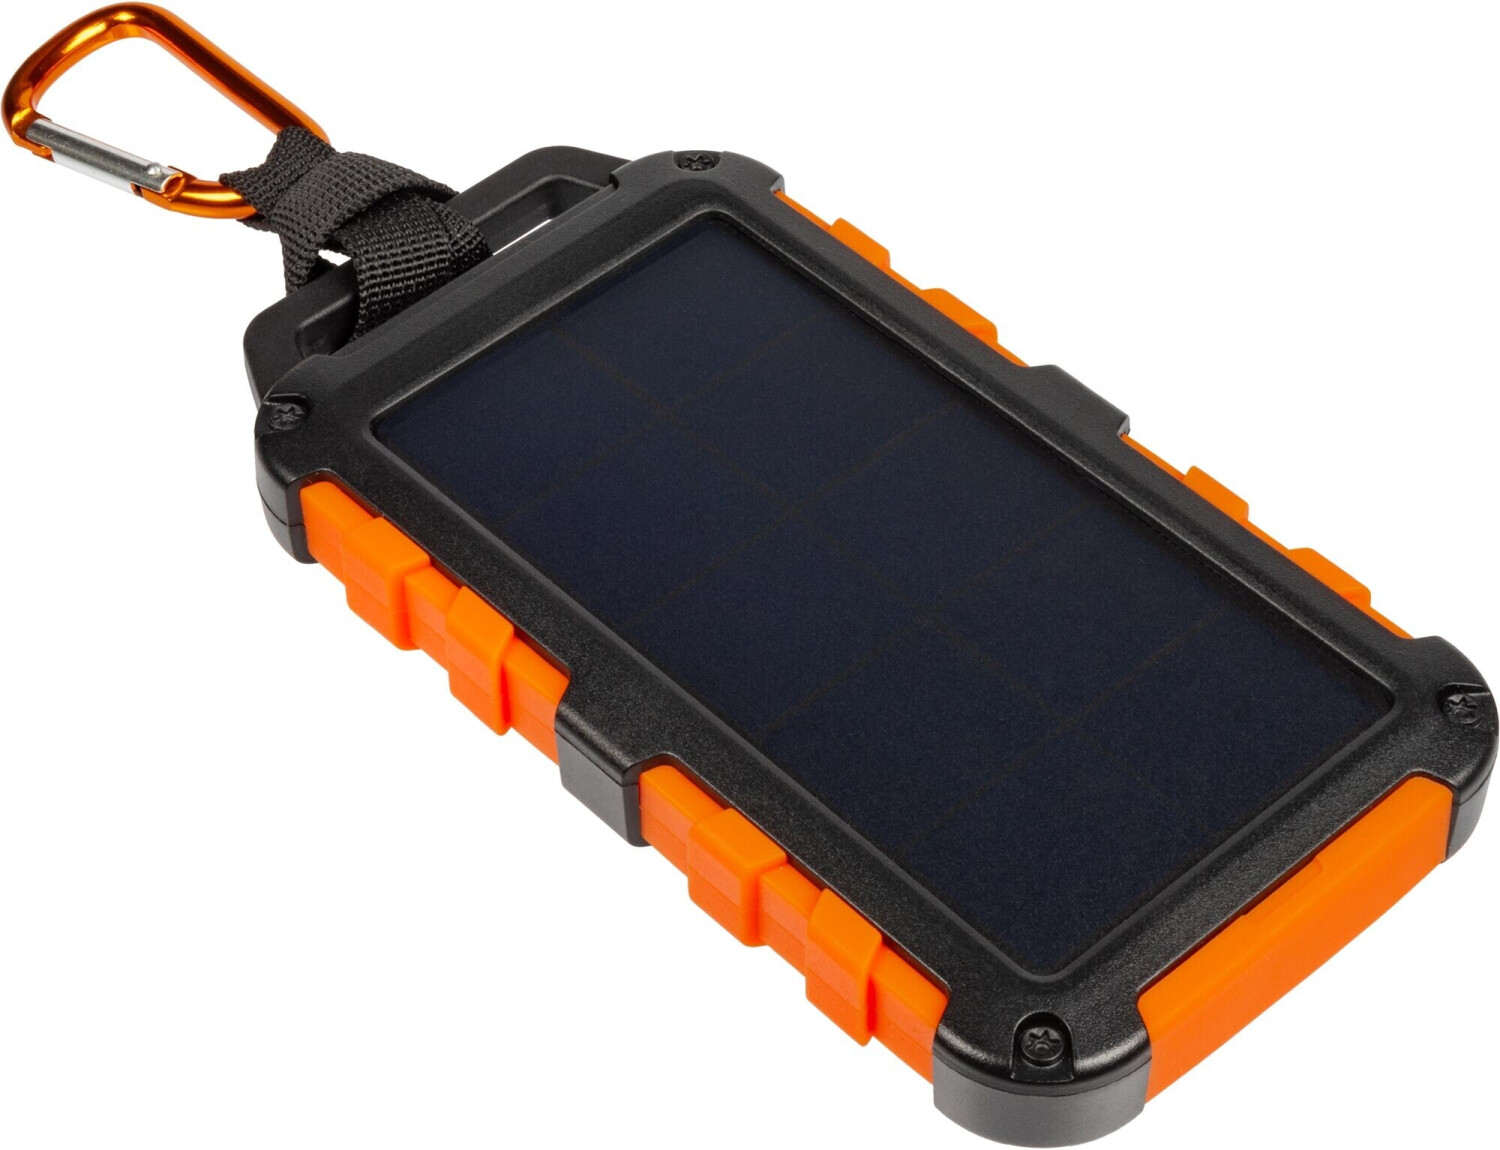 Power Bank solaire double USB 20000mah waterproof avec lampe torche - Noir